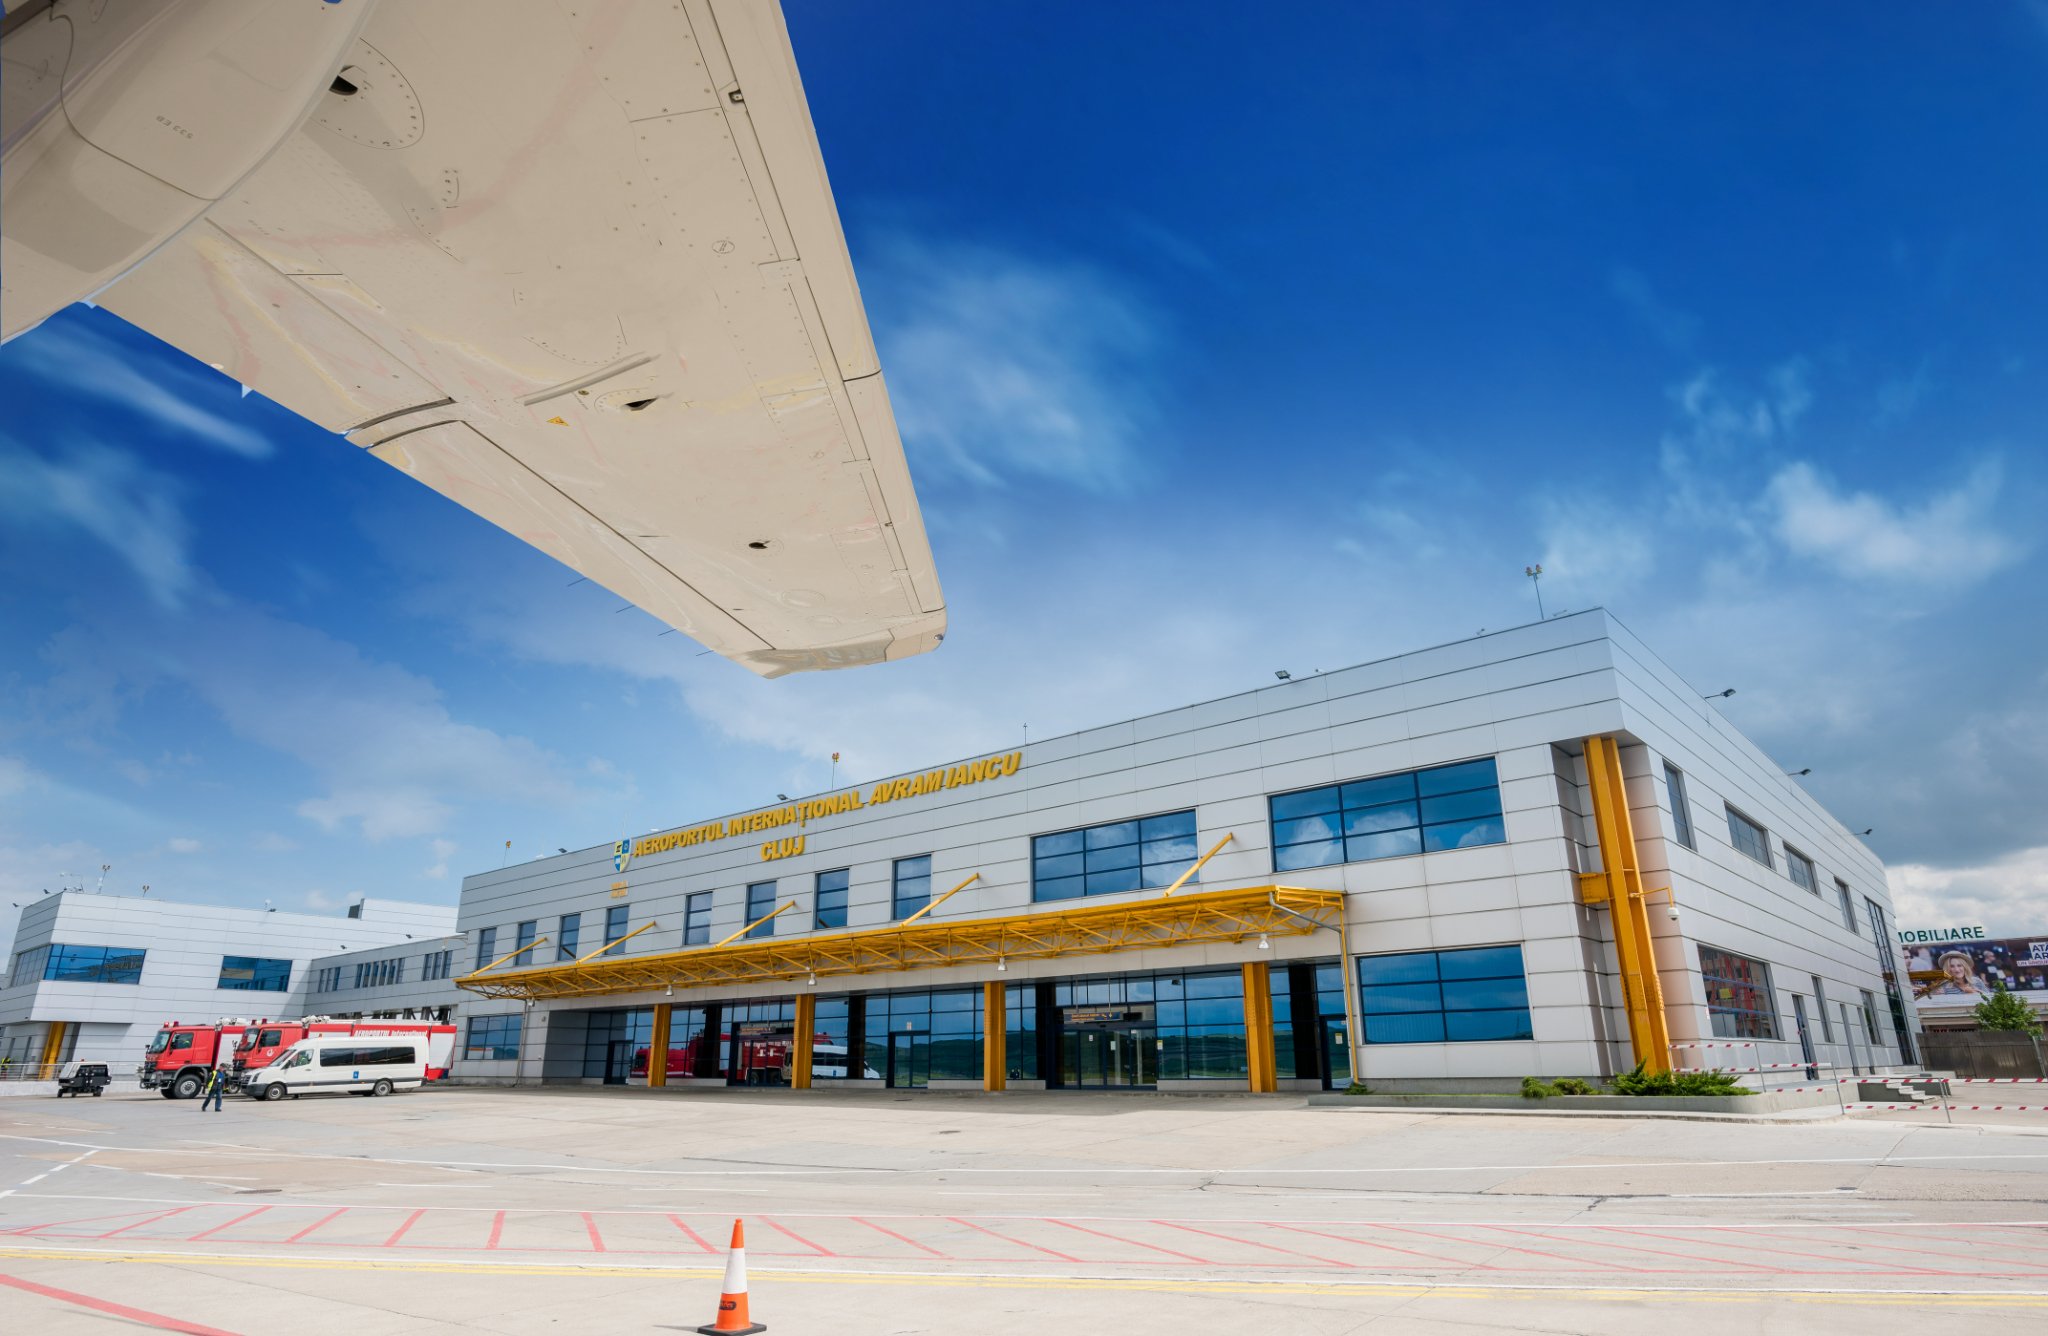 Aeroportul Avram Iancu Cluj-Napoca se numără printre aerogările din România cu cele mai mari cantități de marfă transportată aerian. Foto: Facebook/ Aeroportul Internațional Avram Iancu Cluj